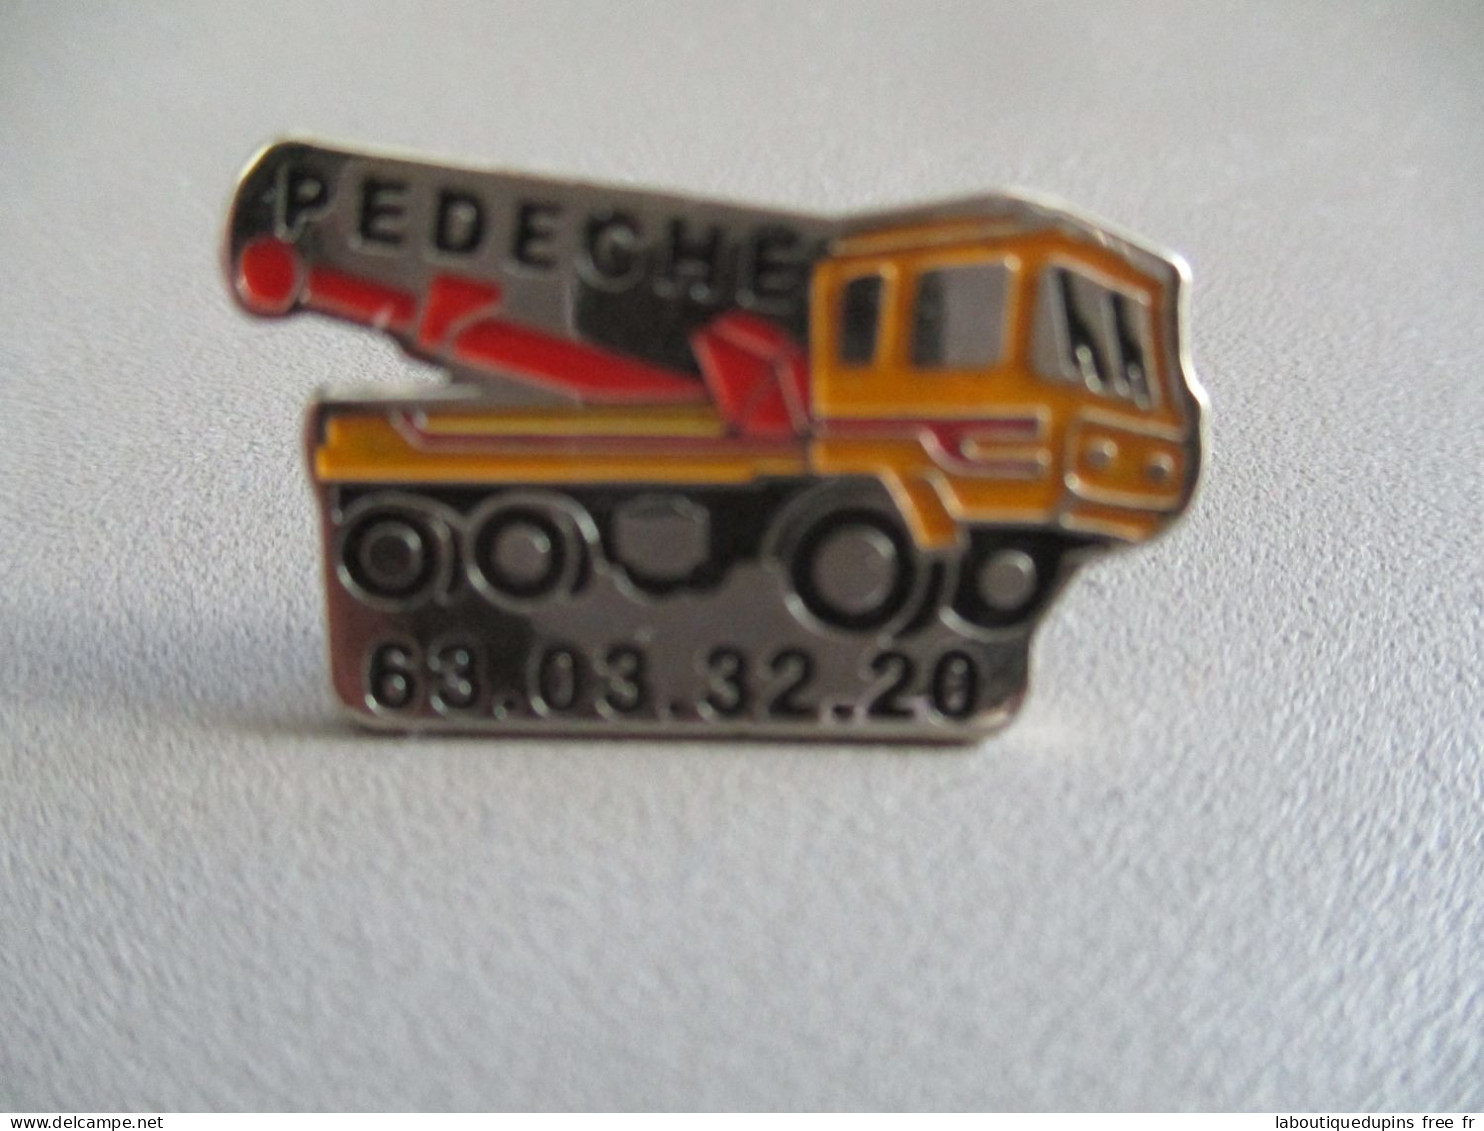 Pin's Lot 005 -- Pedeche 63 03 32 20  -- Exclusif Sur Delcampe - Transport